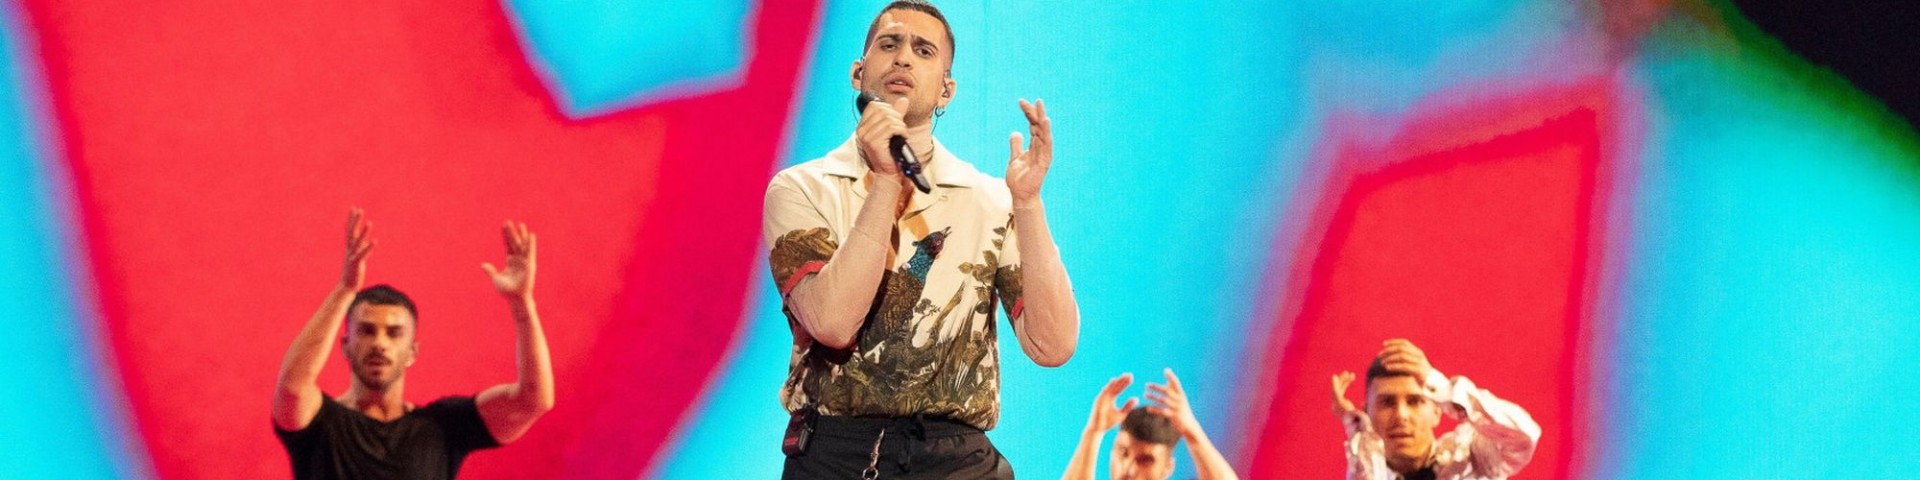 Mahmood: video dell'esibizione all'Eurovision Song Contest 2019